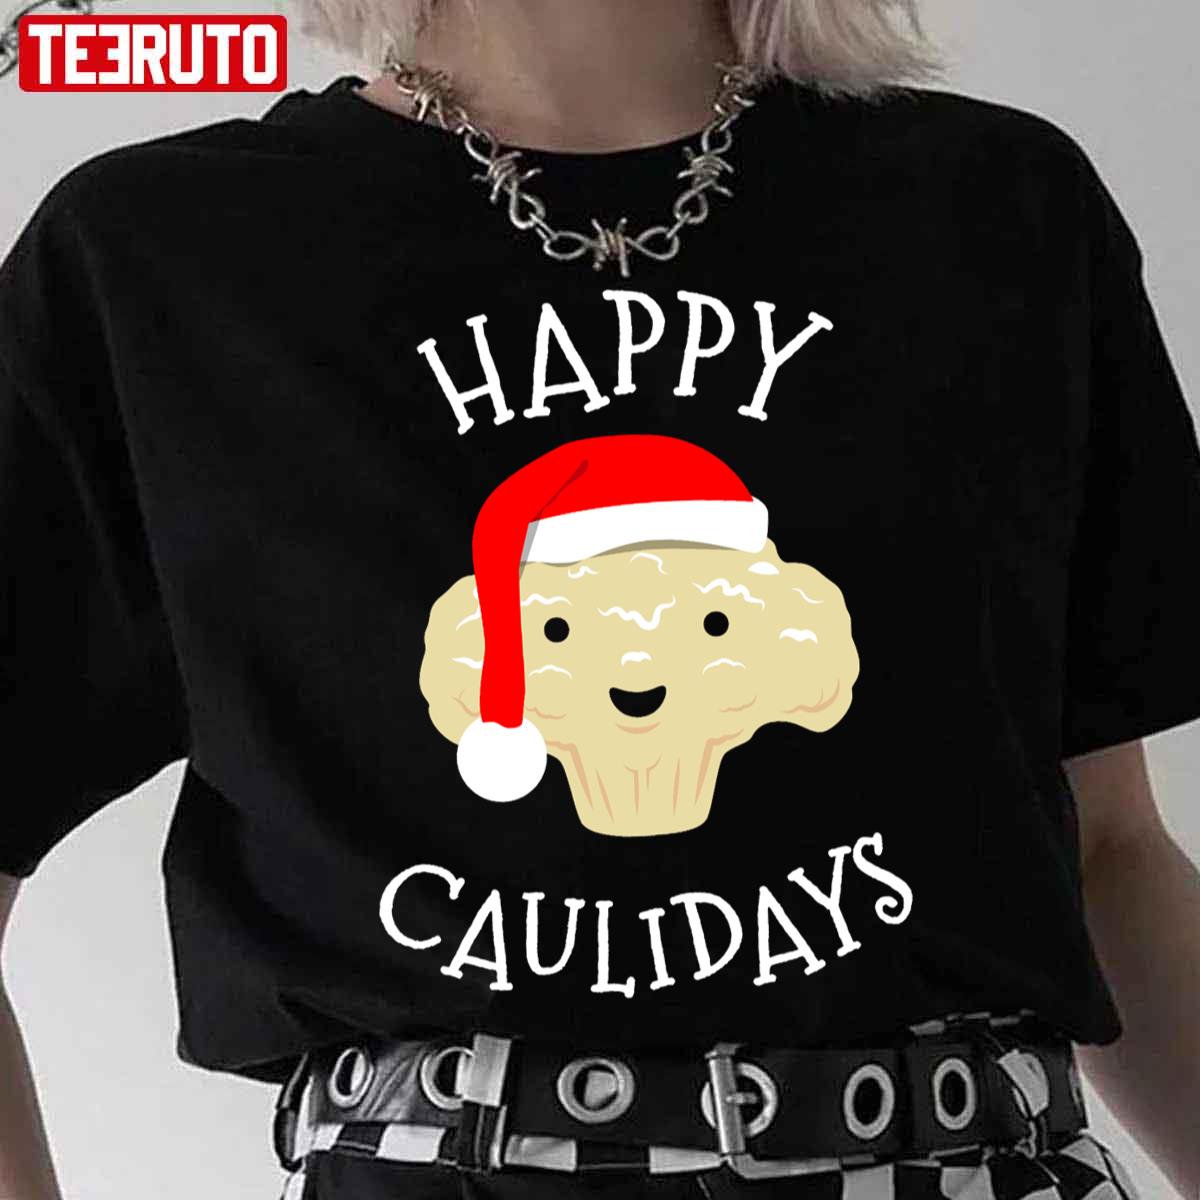 Cauliflower Christmas Keto Diet Vegan Caulidays Unisex T-Shirt